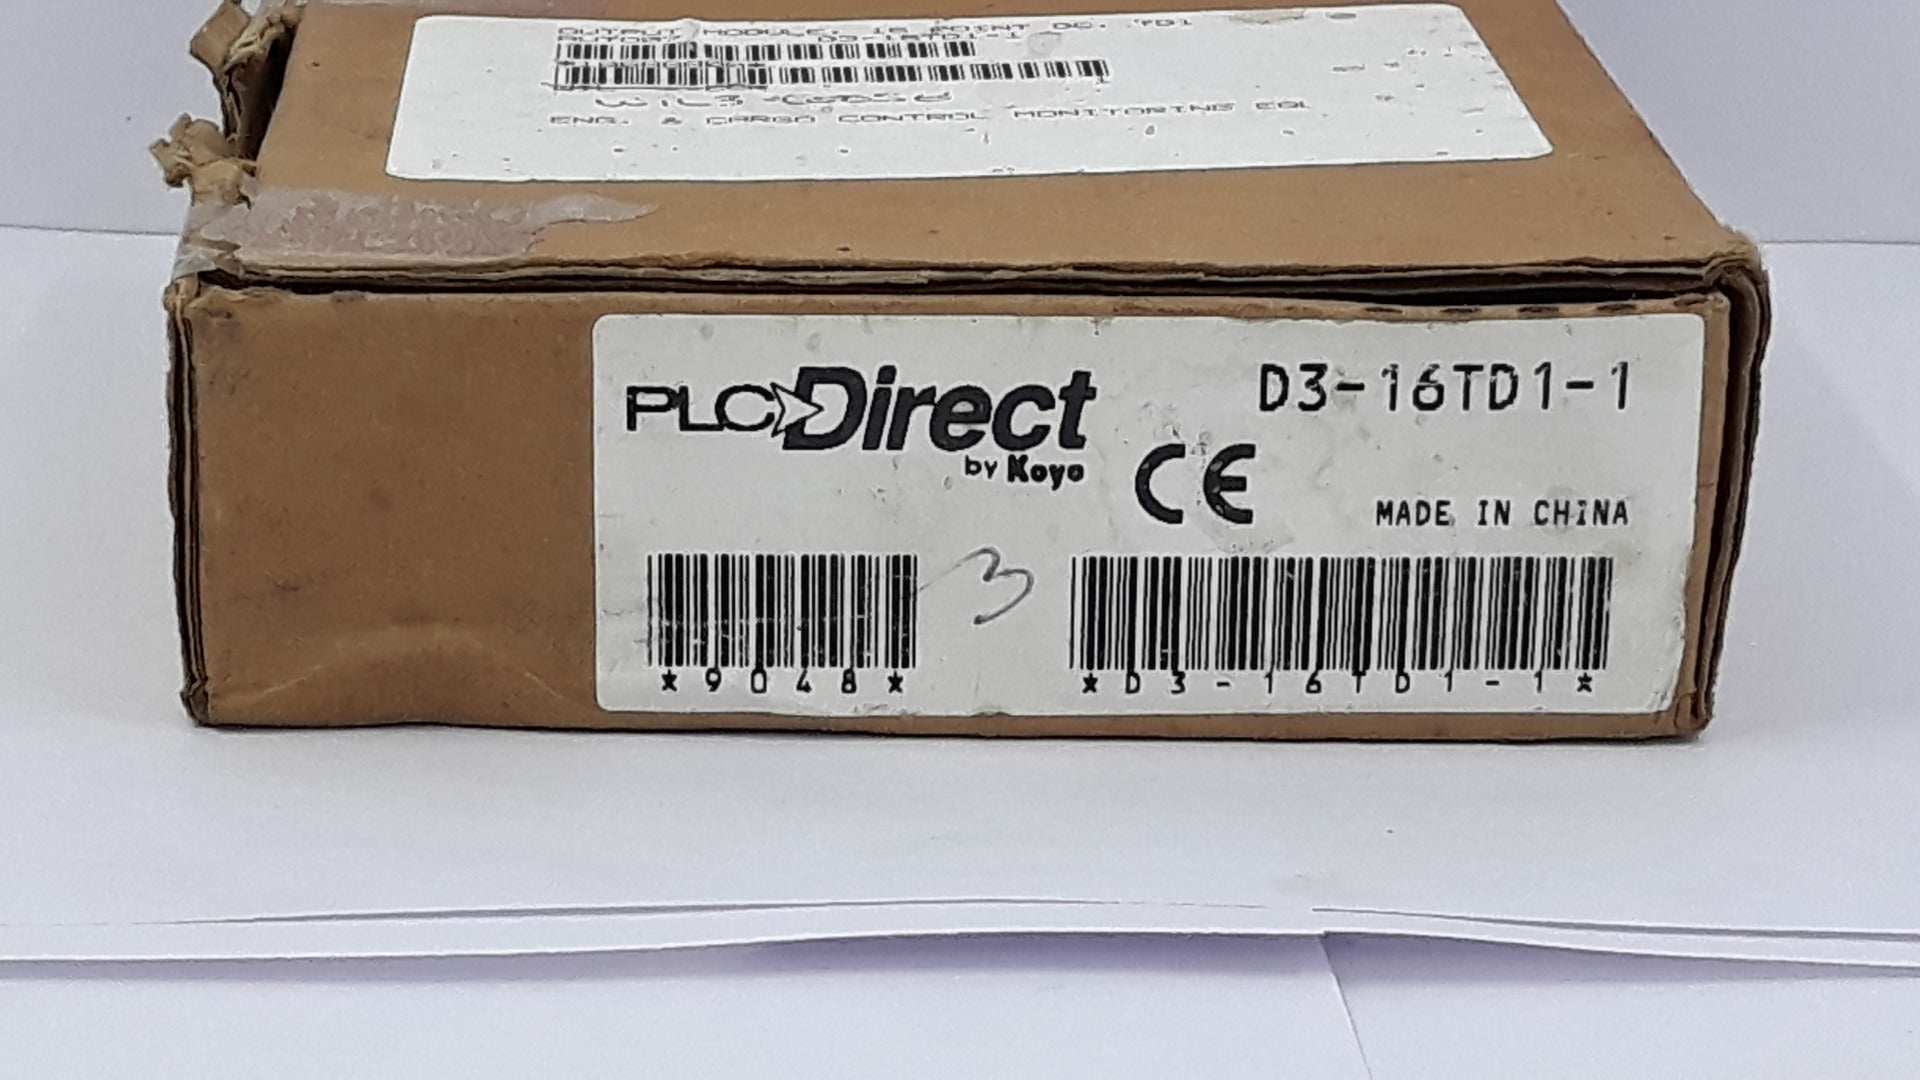 Plc Direct D3-16Td1-1 24Vdc Output Module 5-28Vdc 0.5A